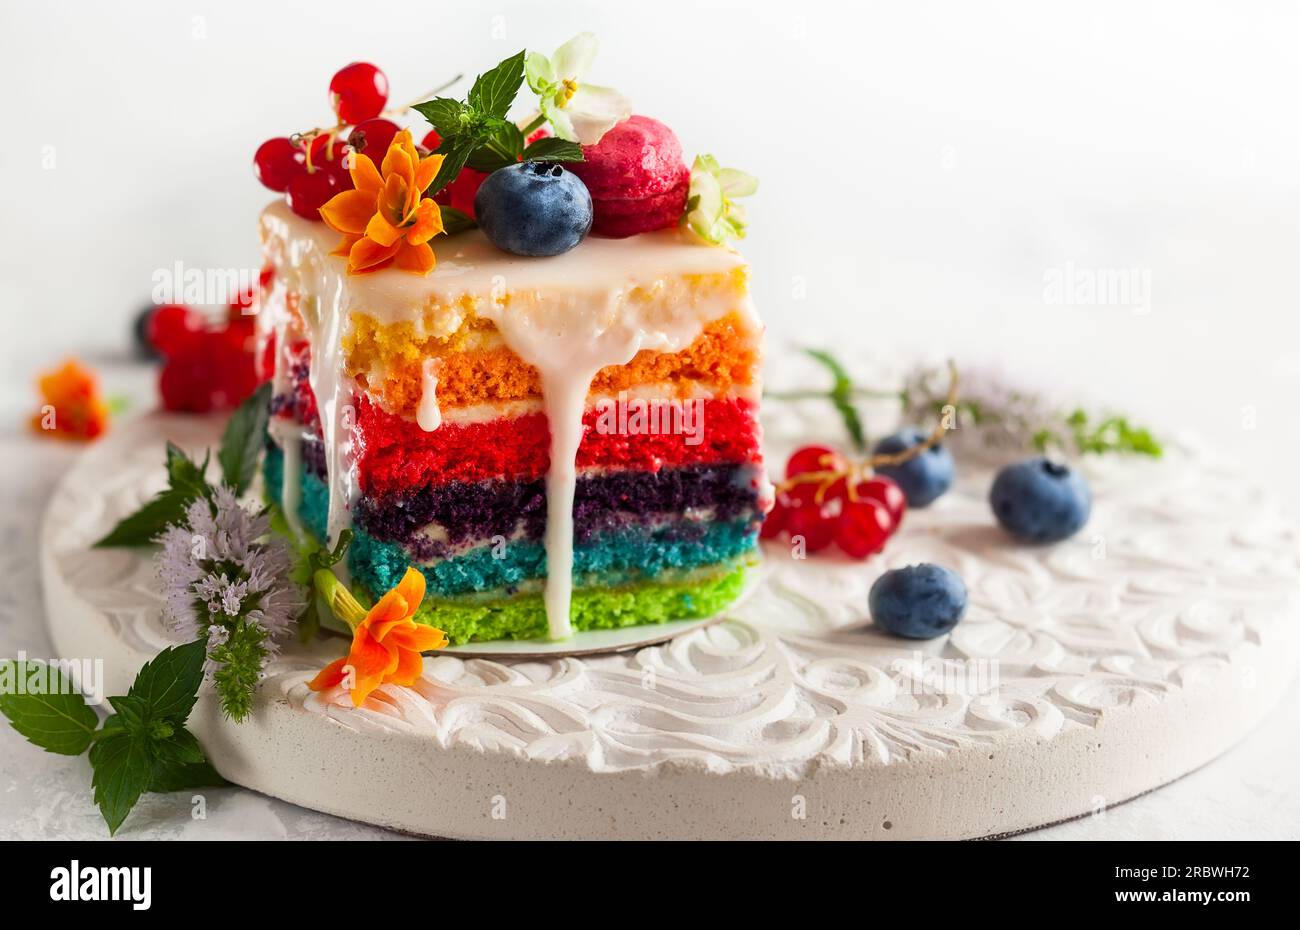 Arcore, le decorazioni per torte di Art Cakes volano in tutta Europa -  MBNews